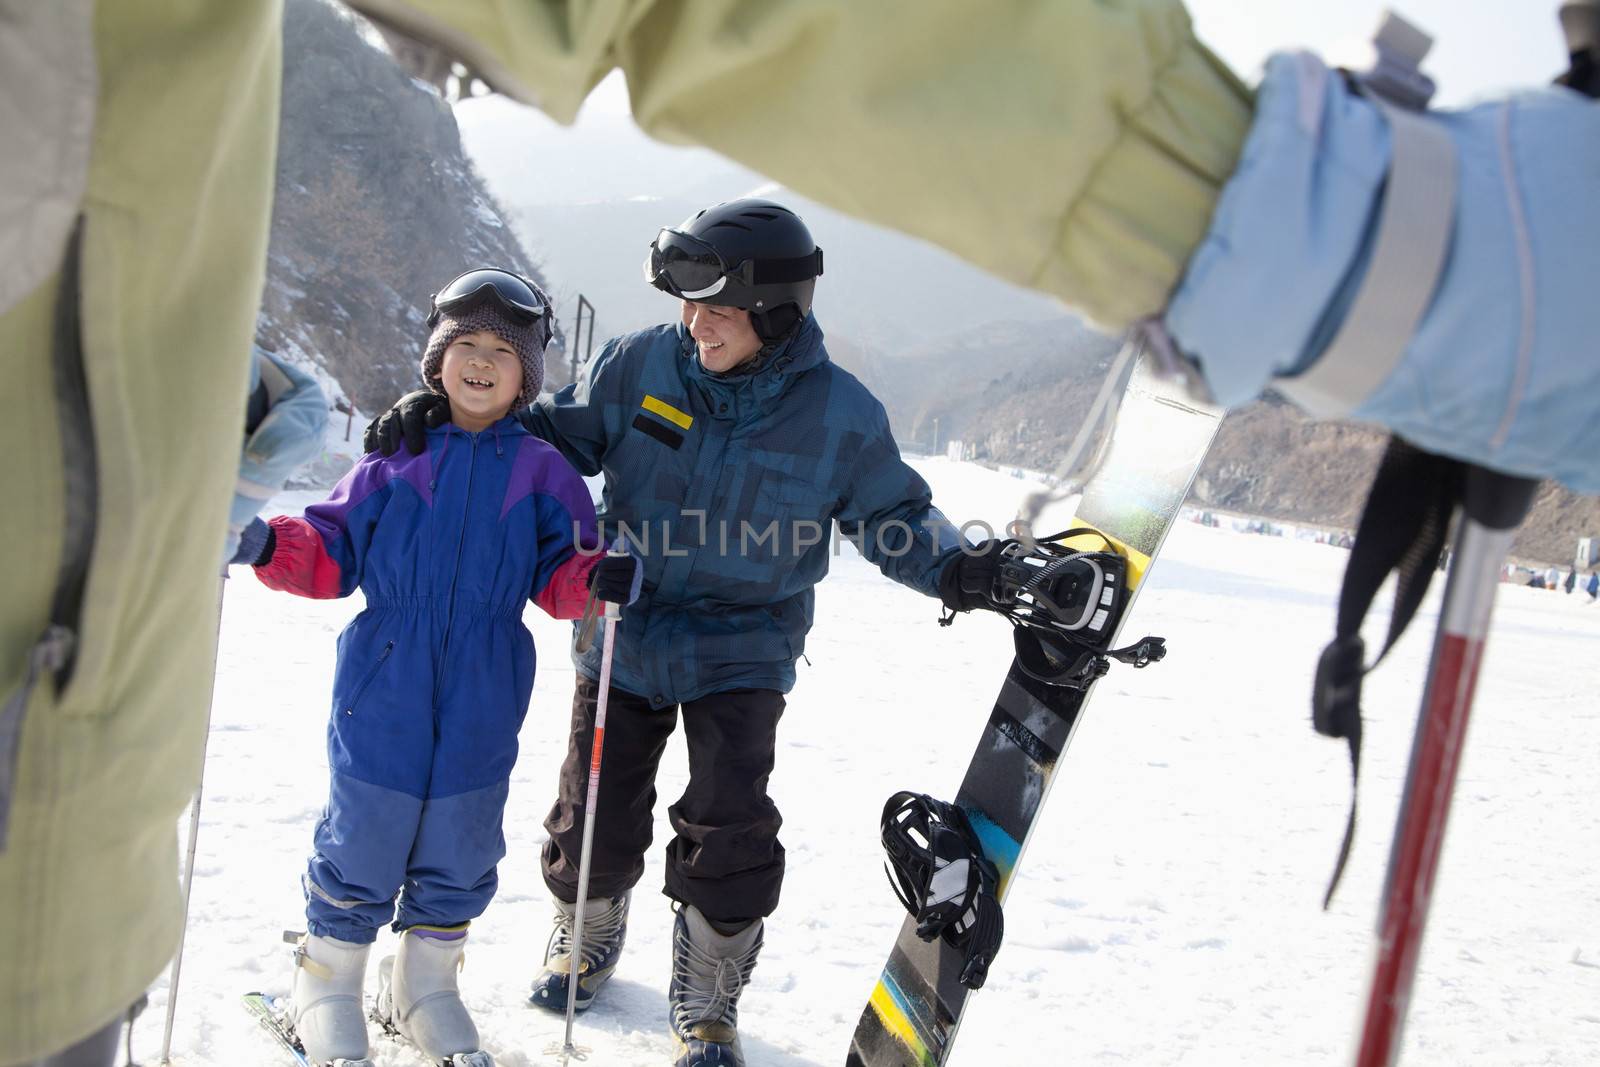 Family Skiing in Ski Resort